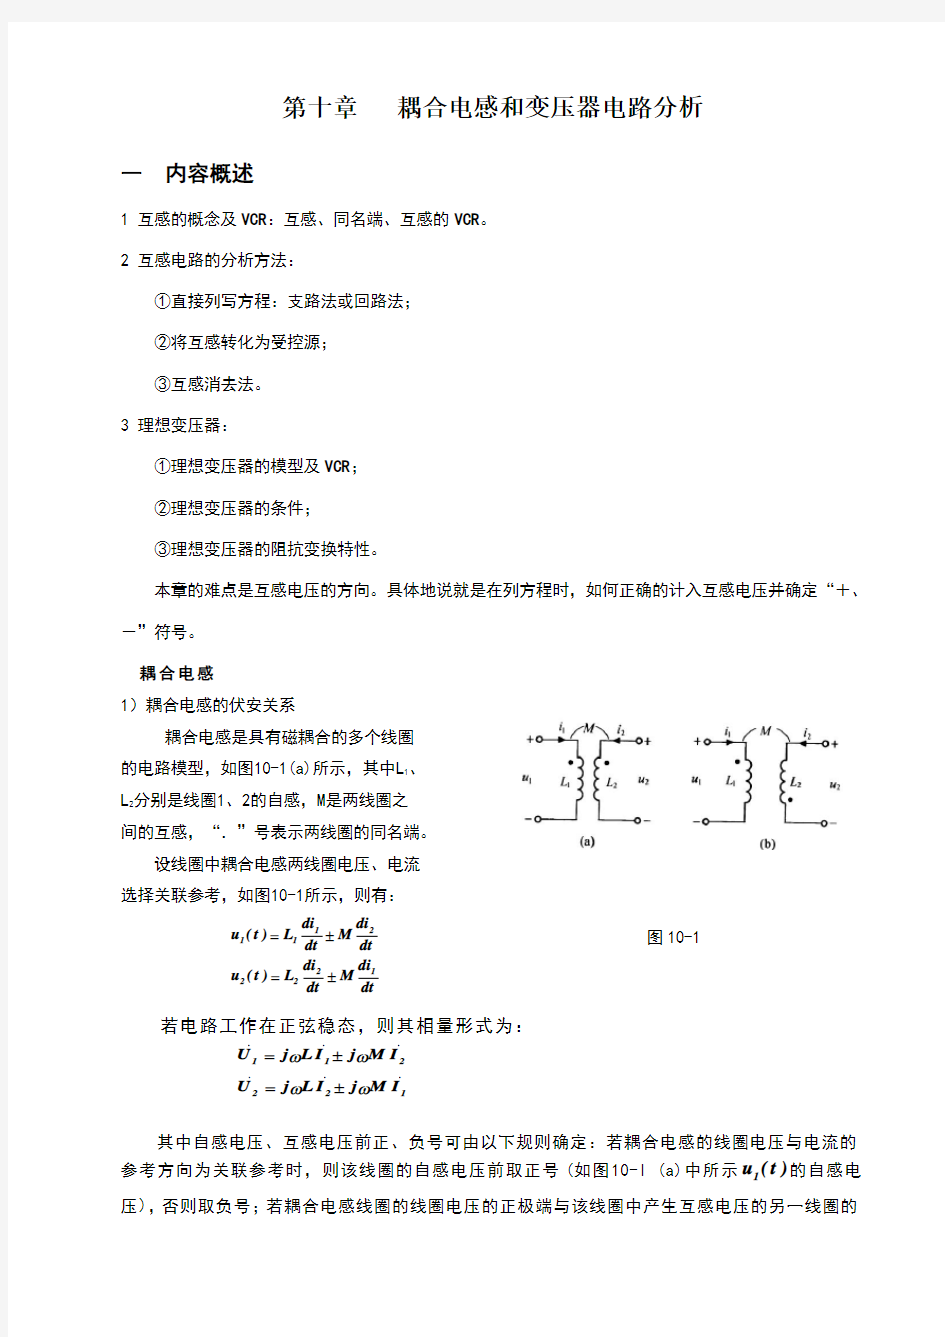 天津理工电路习题及答案第十章含耦合电感电路